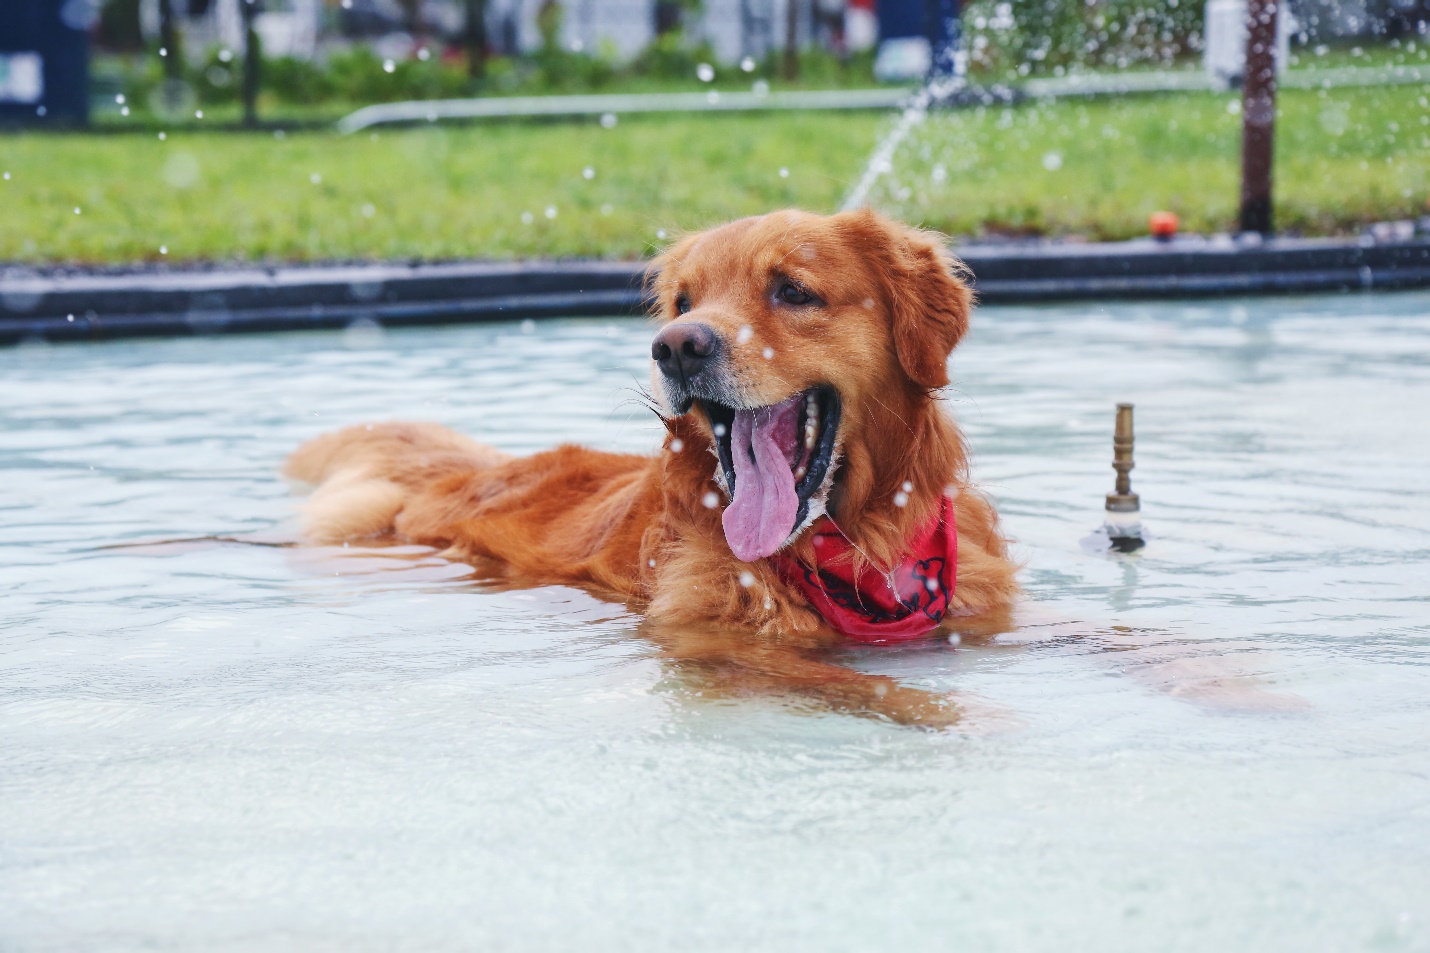 A dog enjoying splashing in a pool. 